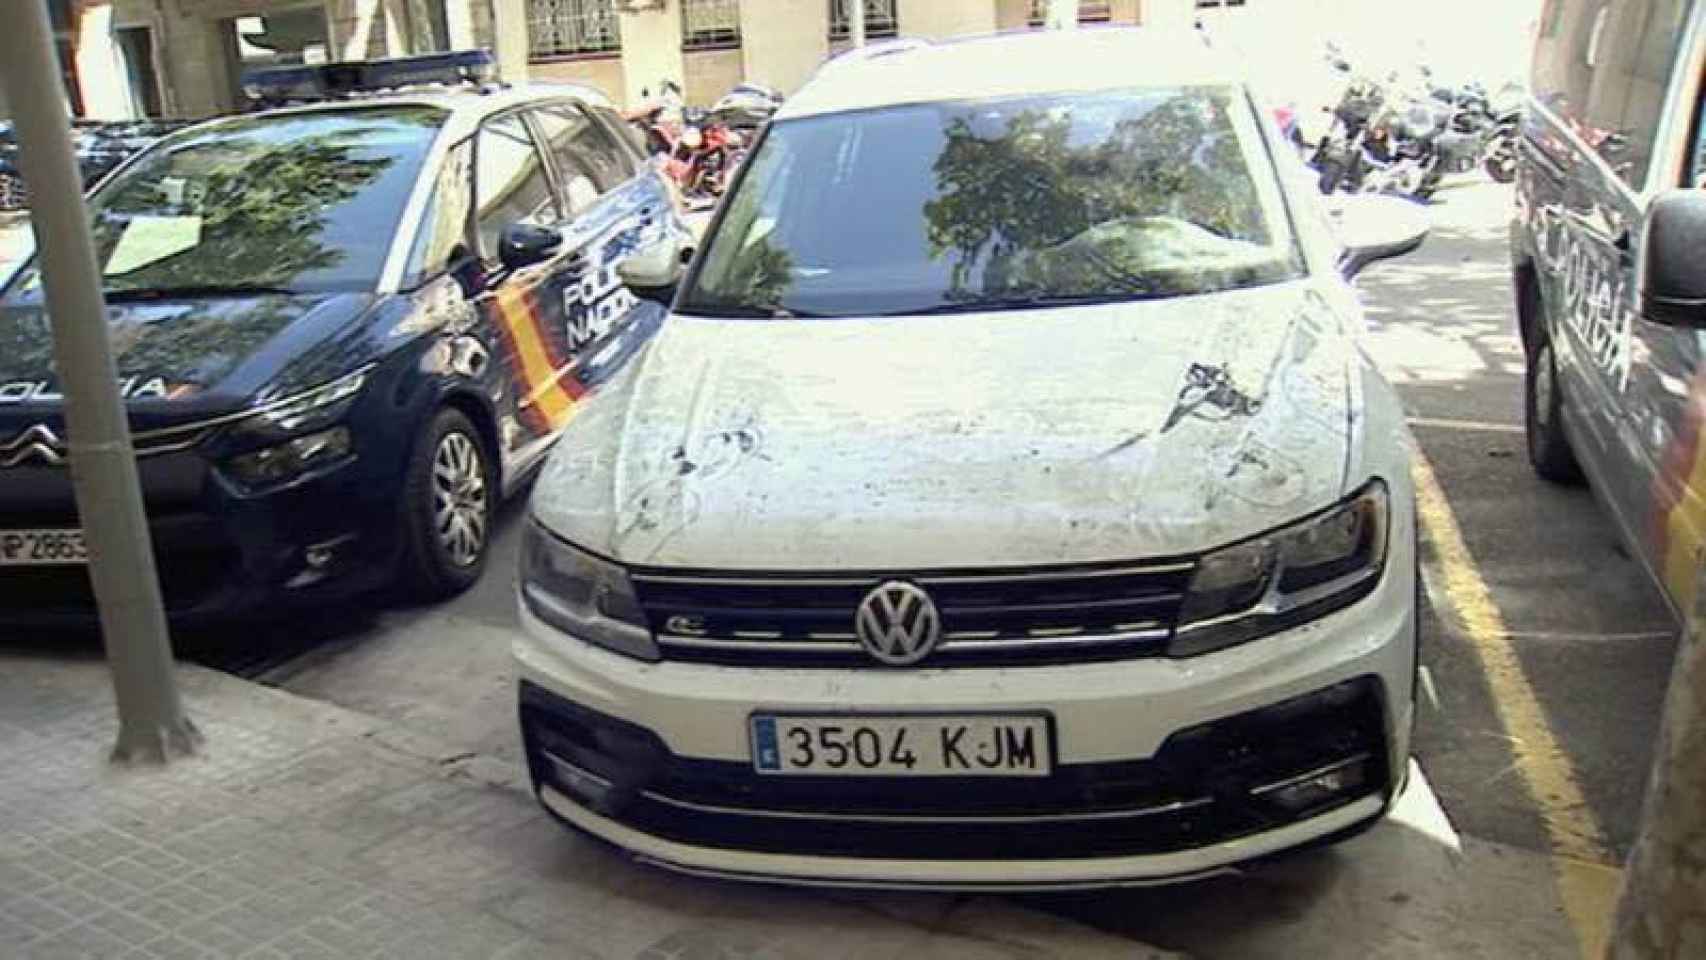 Volkswagen Tiguan con el que Adrián habría llevado al cineasta holandés al hospital después de agredirle